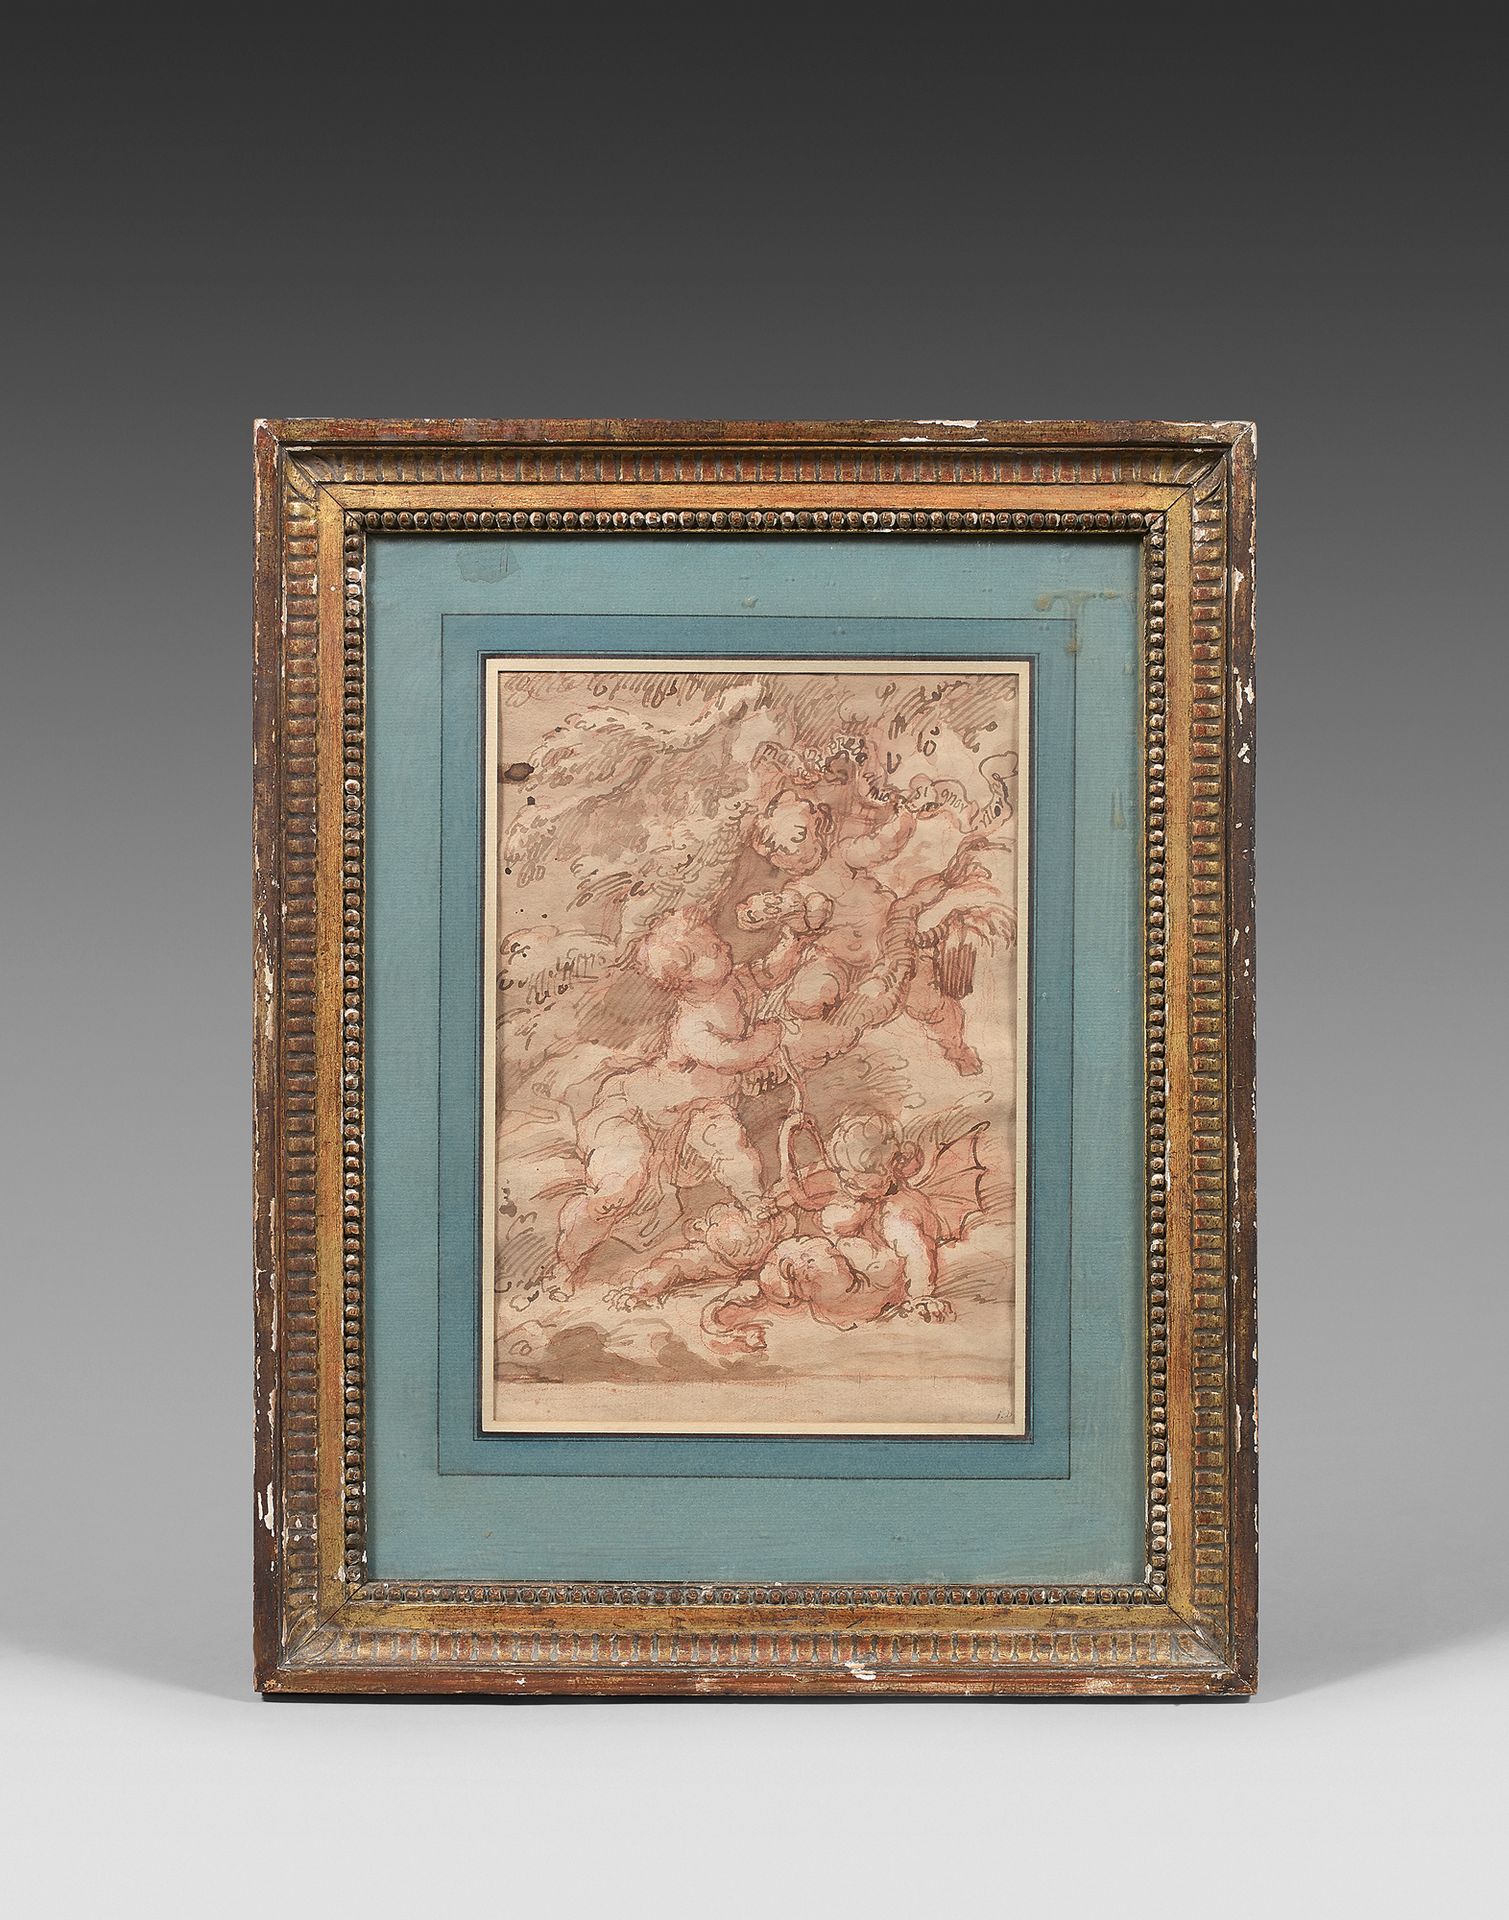 École ITALIENNE du XVIIIe siècle Putti
Braune Lavis und Rötel.
27, 5 x 19 cm